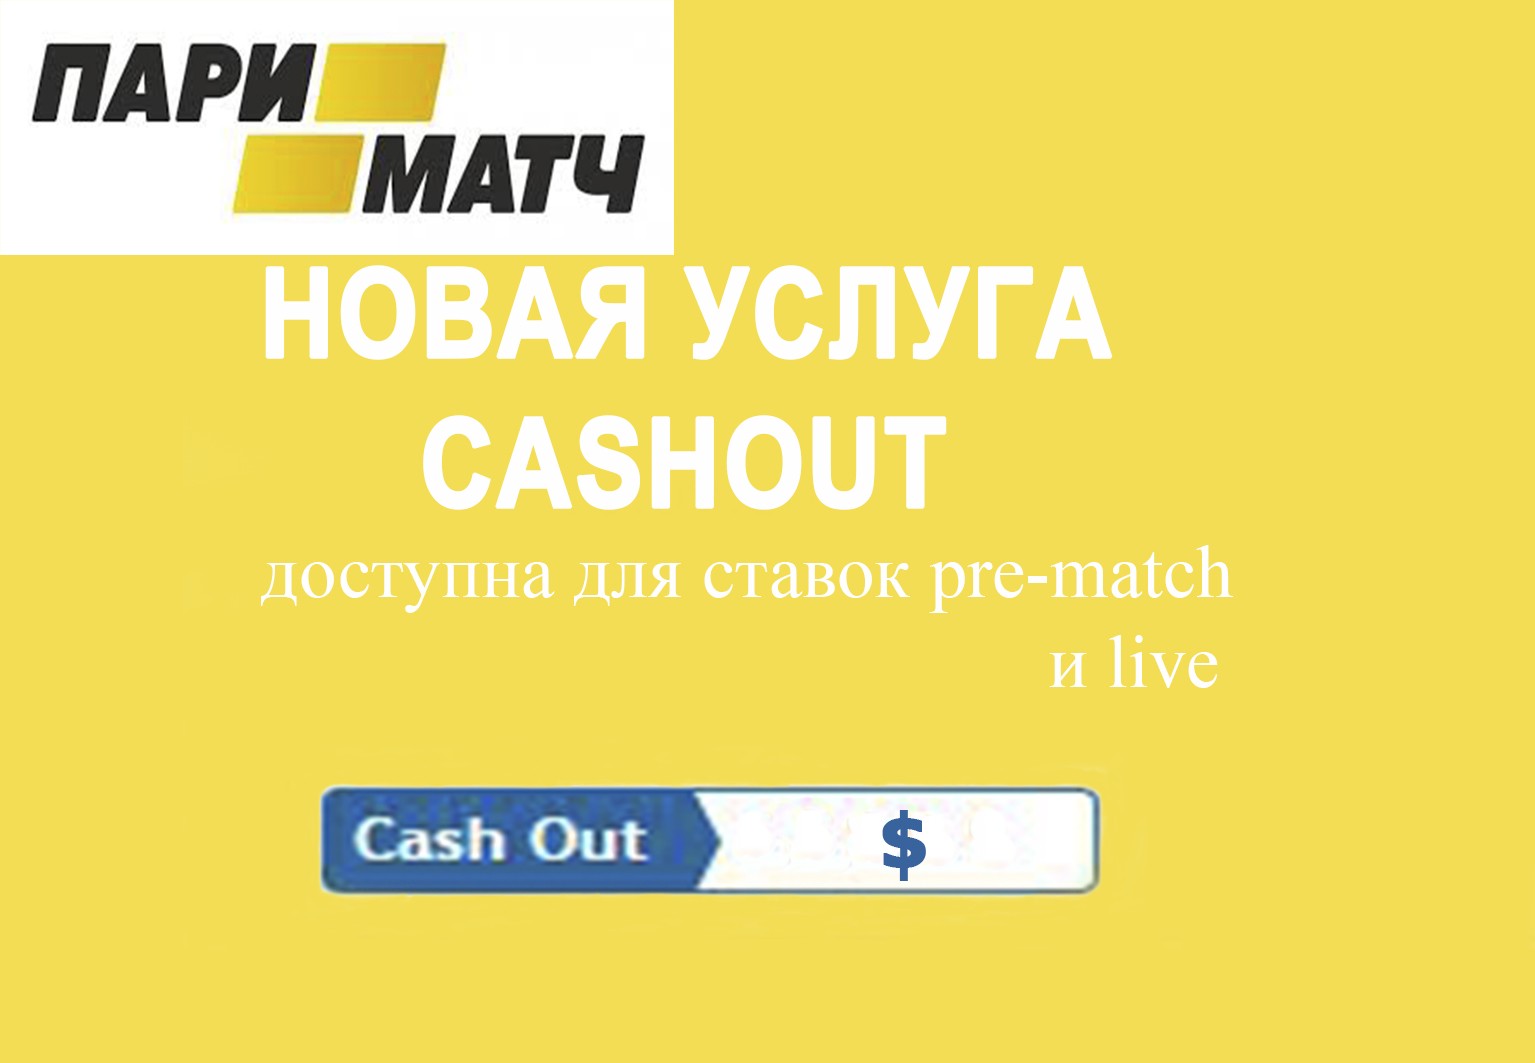 Cash out